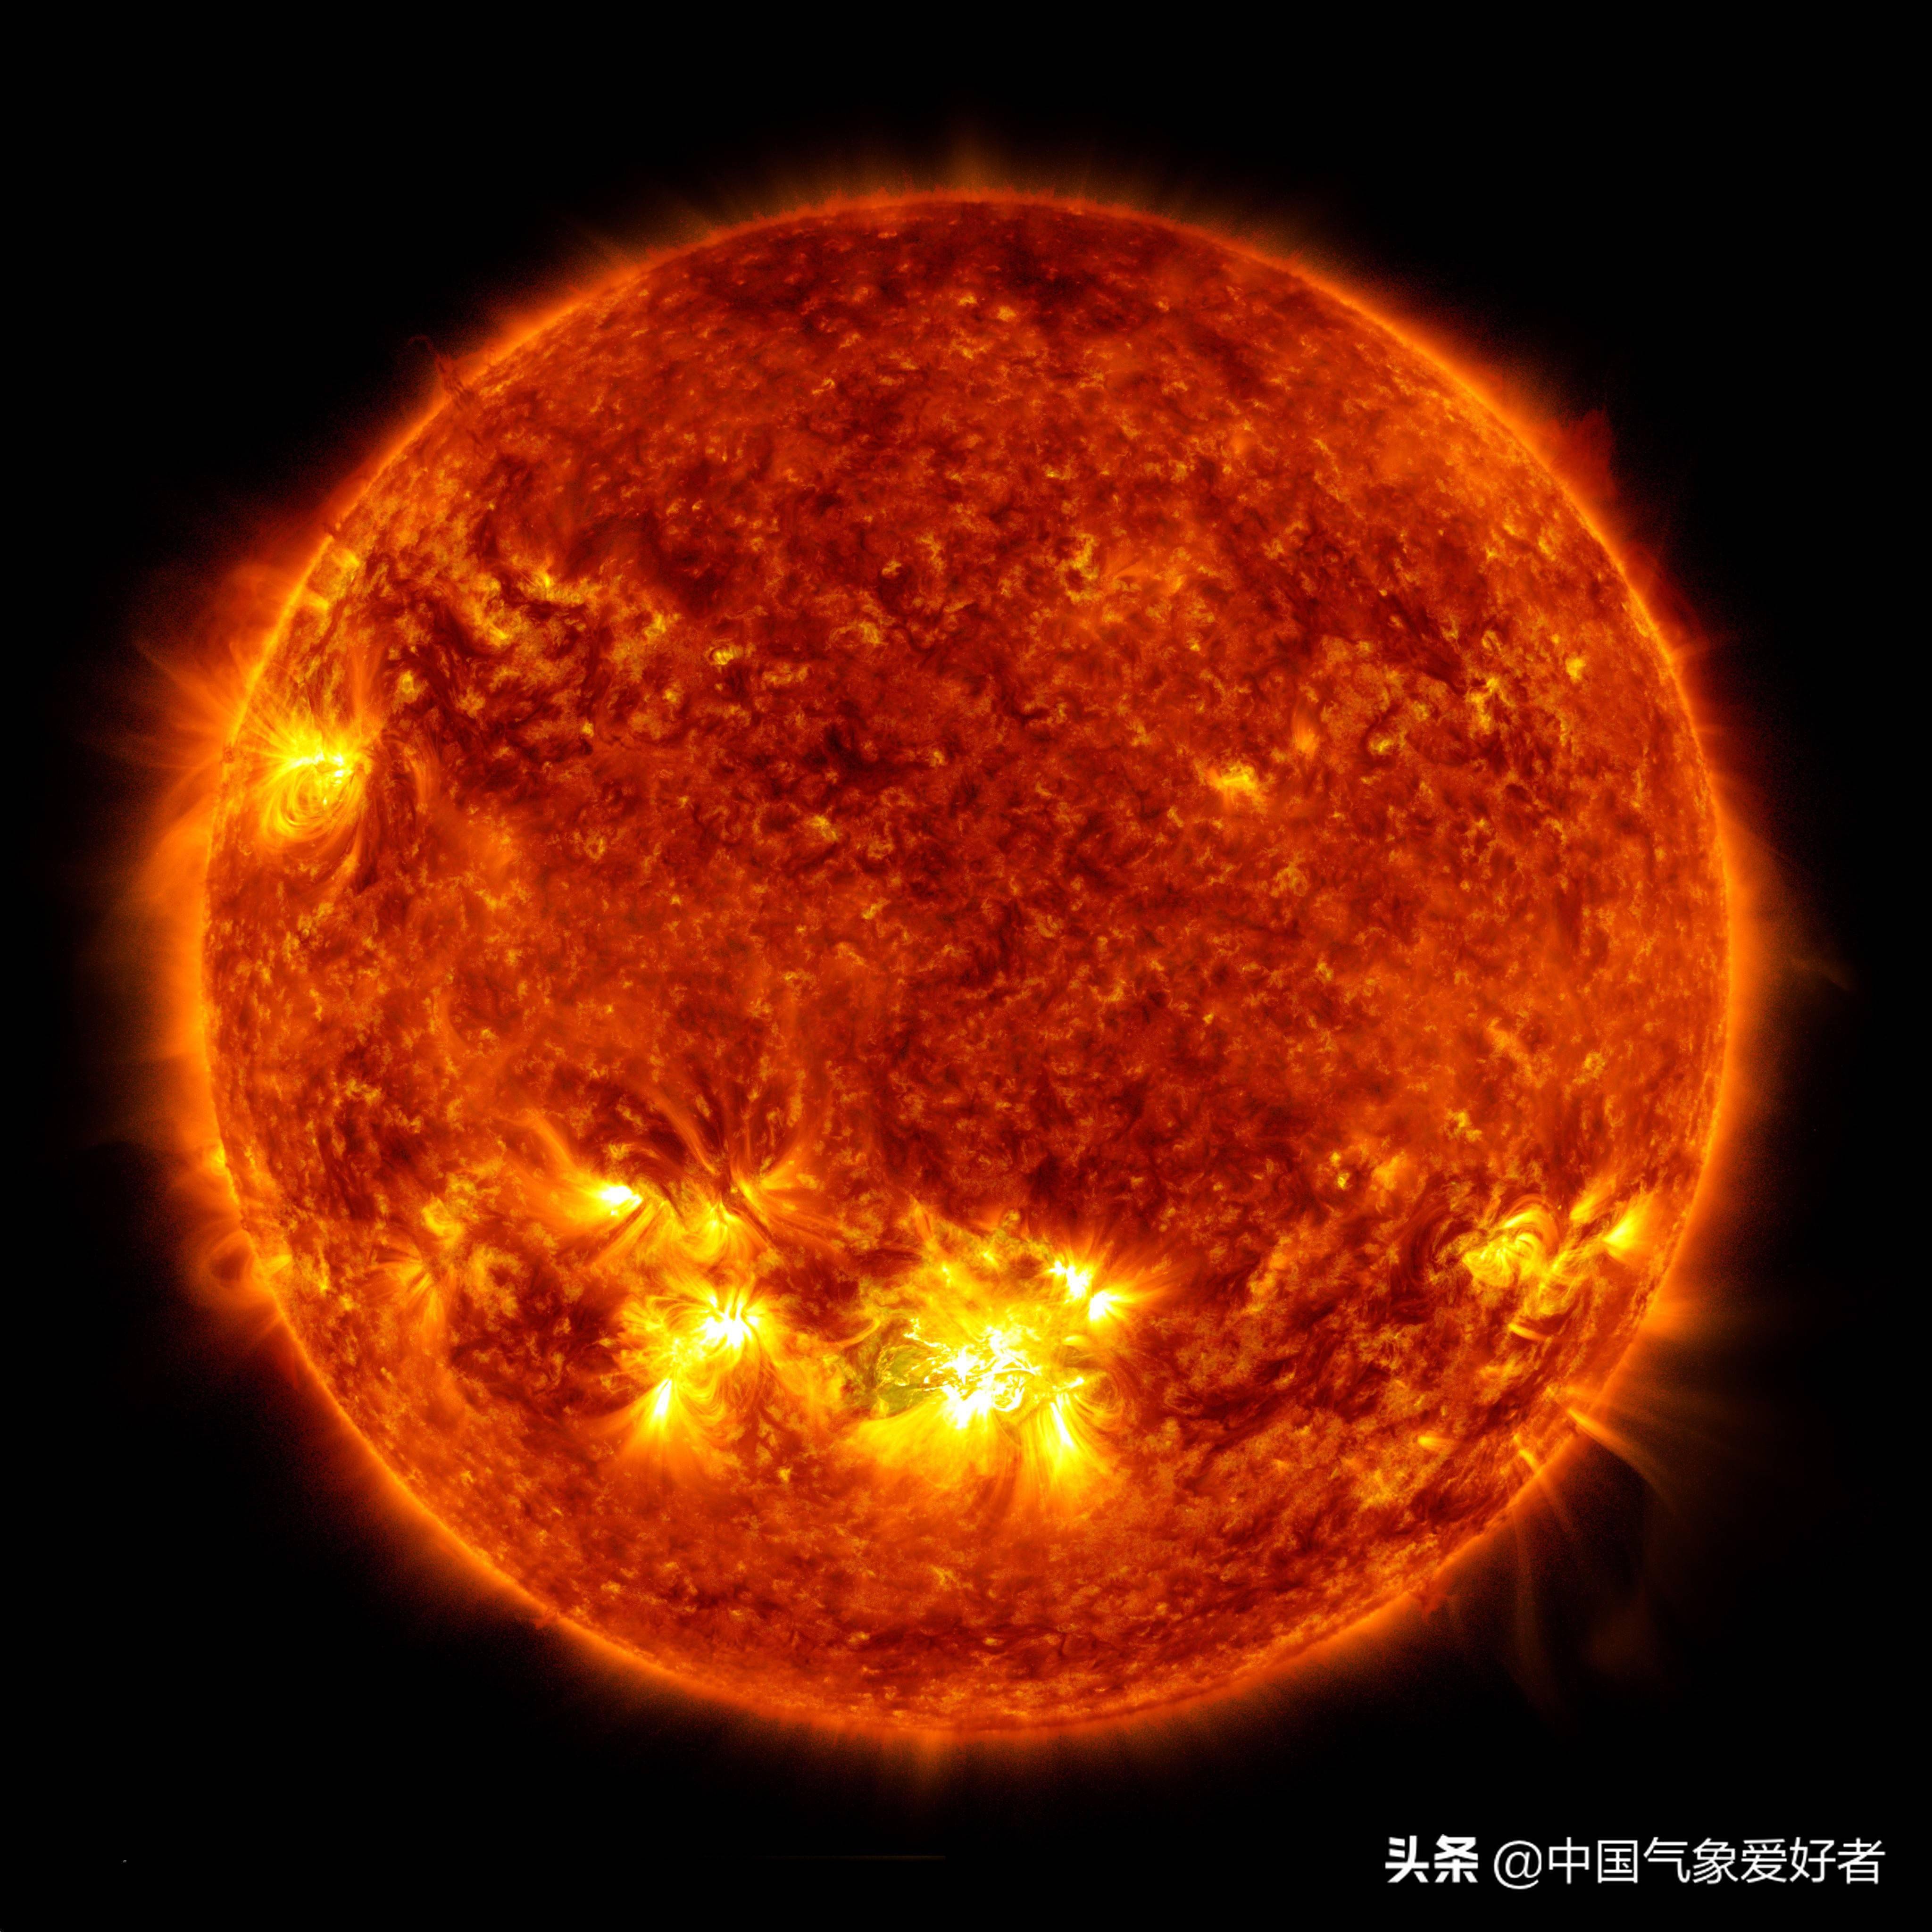 太阳最高等级耀斑爆发,冷冬有更多悬念了?分析:新活动周期开始